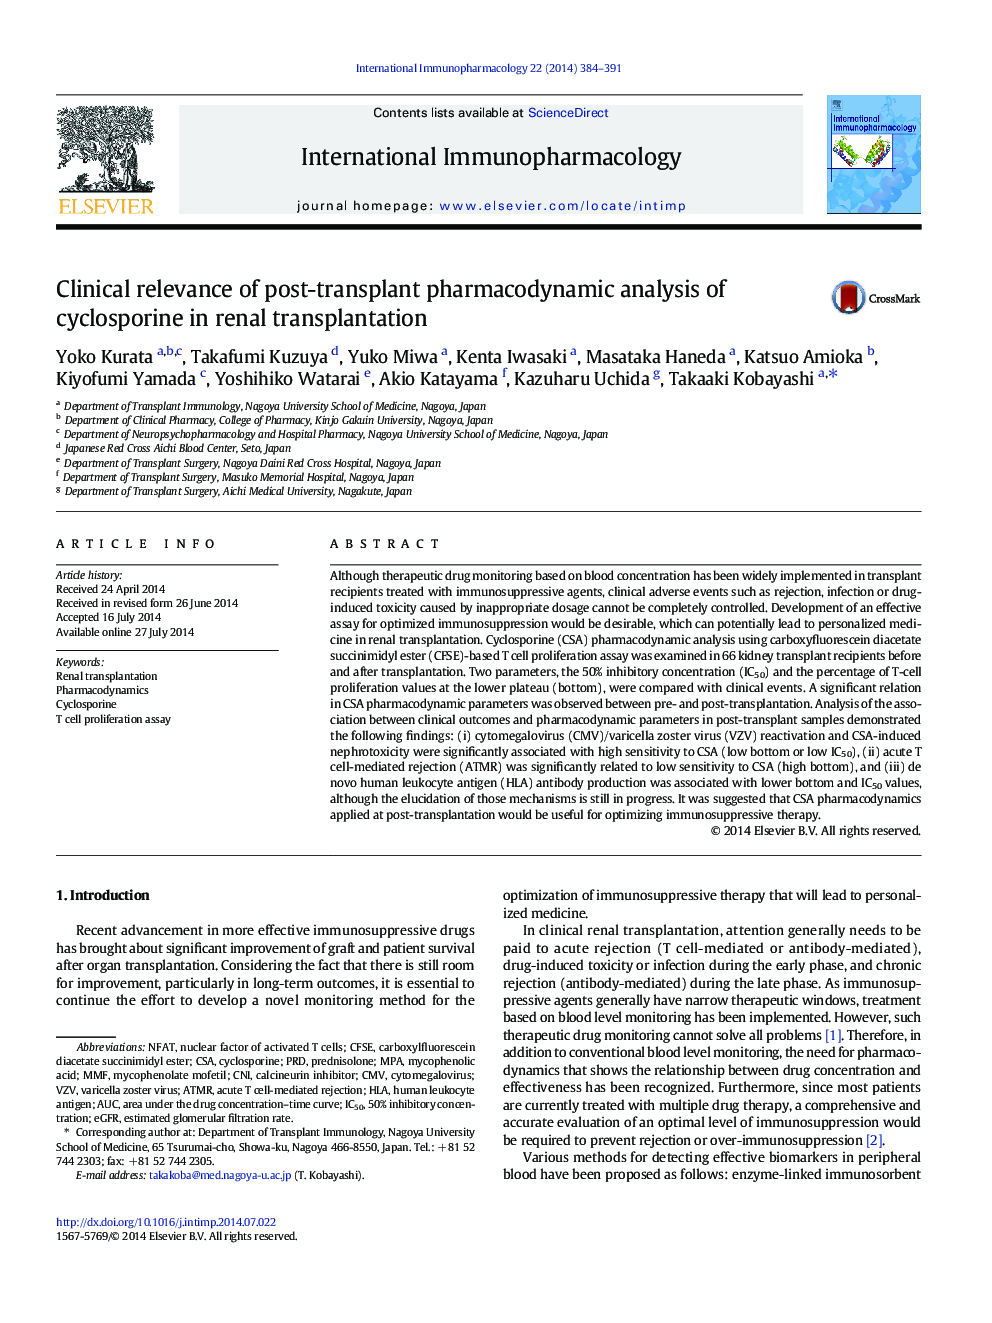 ارتباط بالینی تجزیه و تحلیل فارماکودینامیک پس از پیوند سیکلوسپورین در پیوند کلیه 